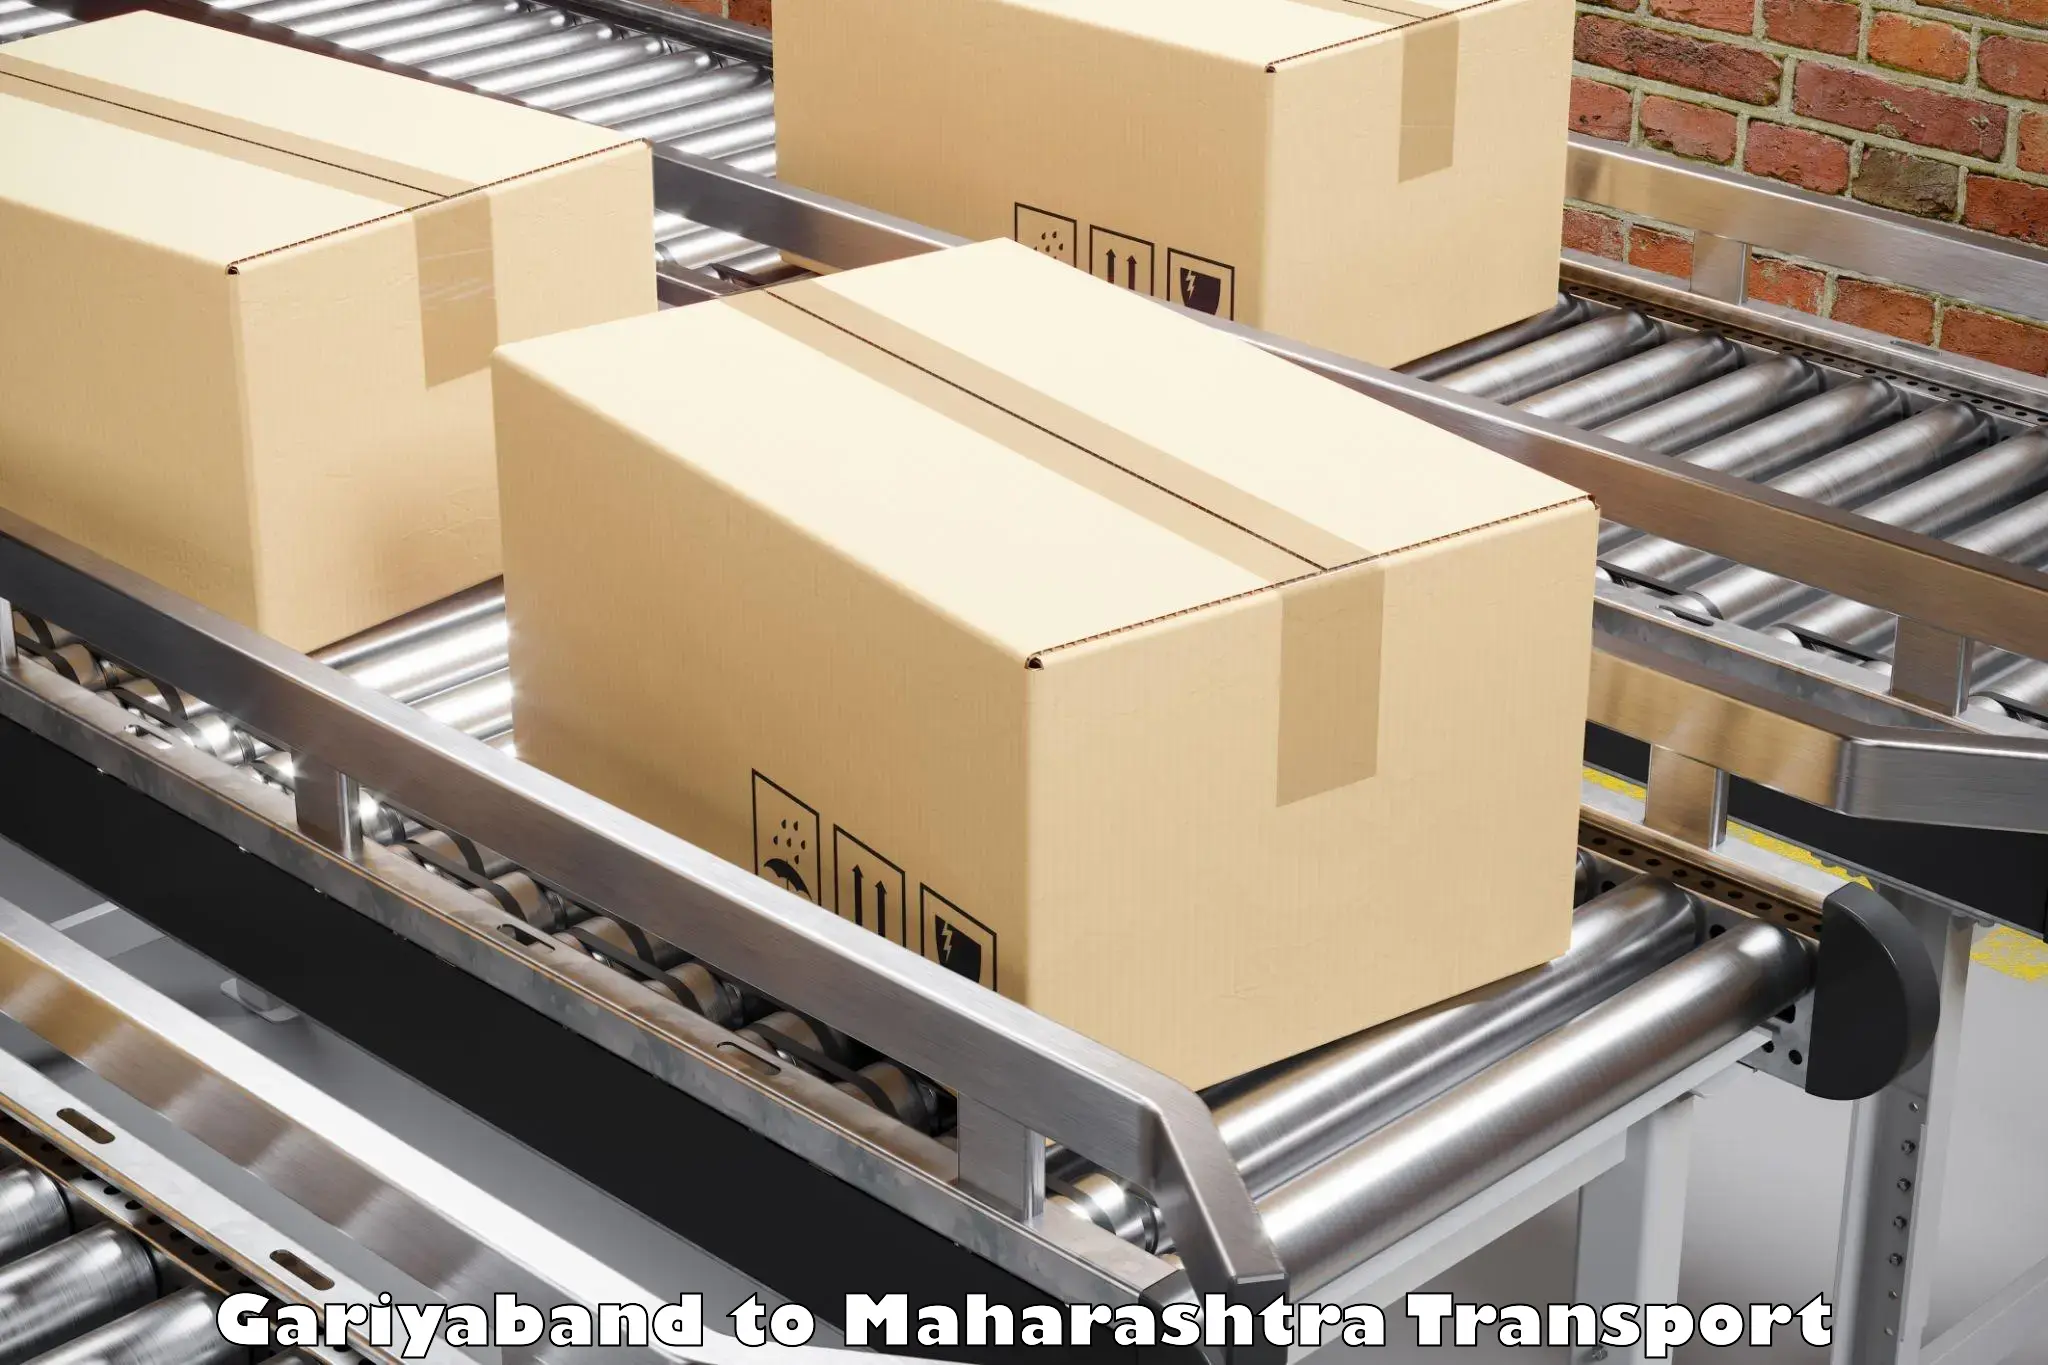 International cargo transportation services Gariyaband to Kandhar